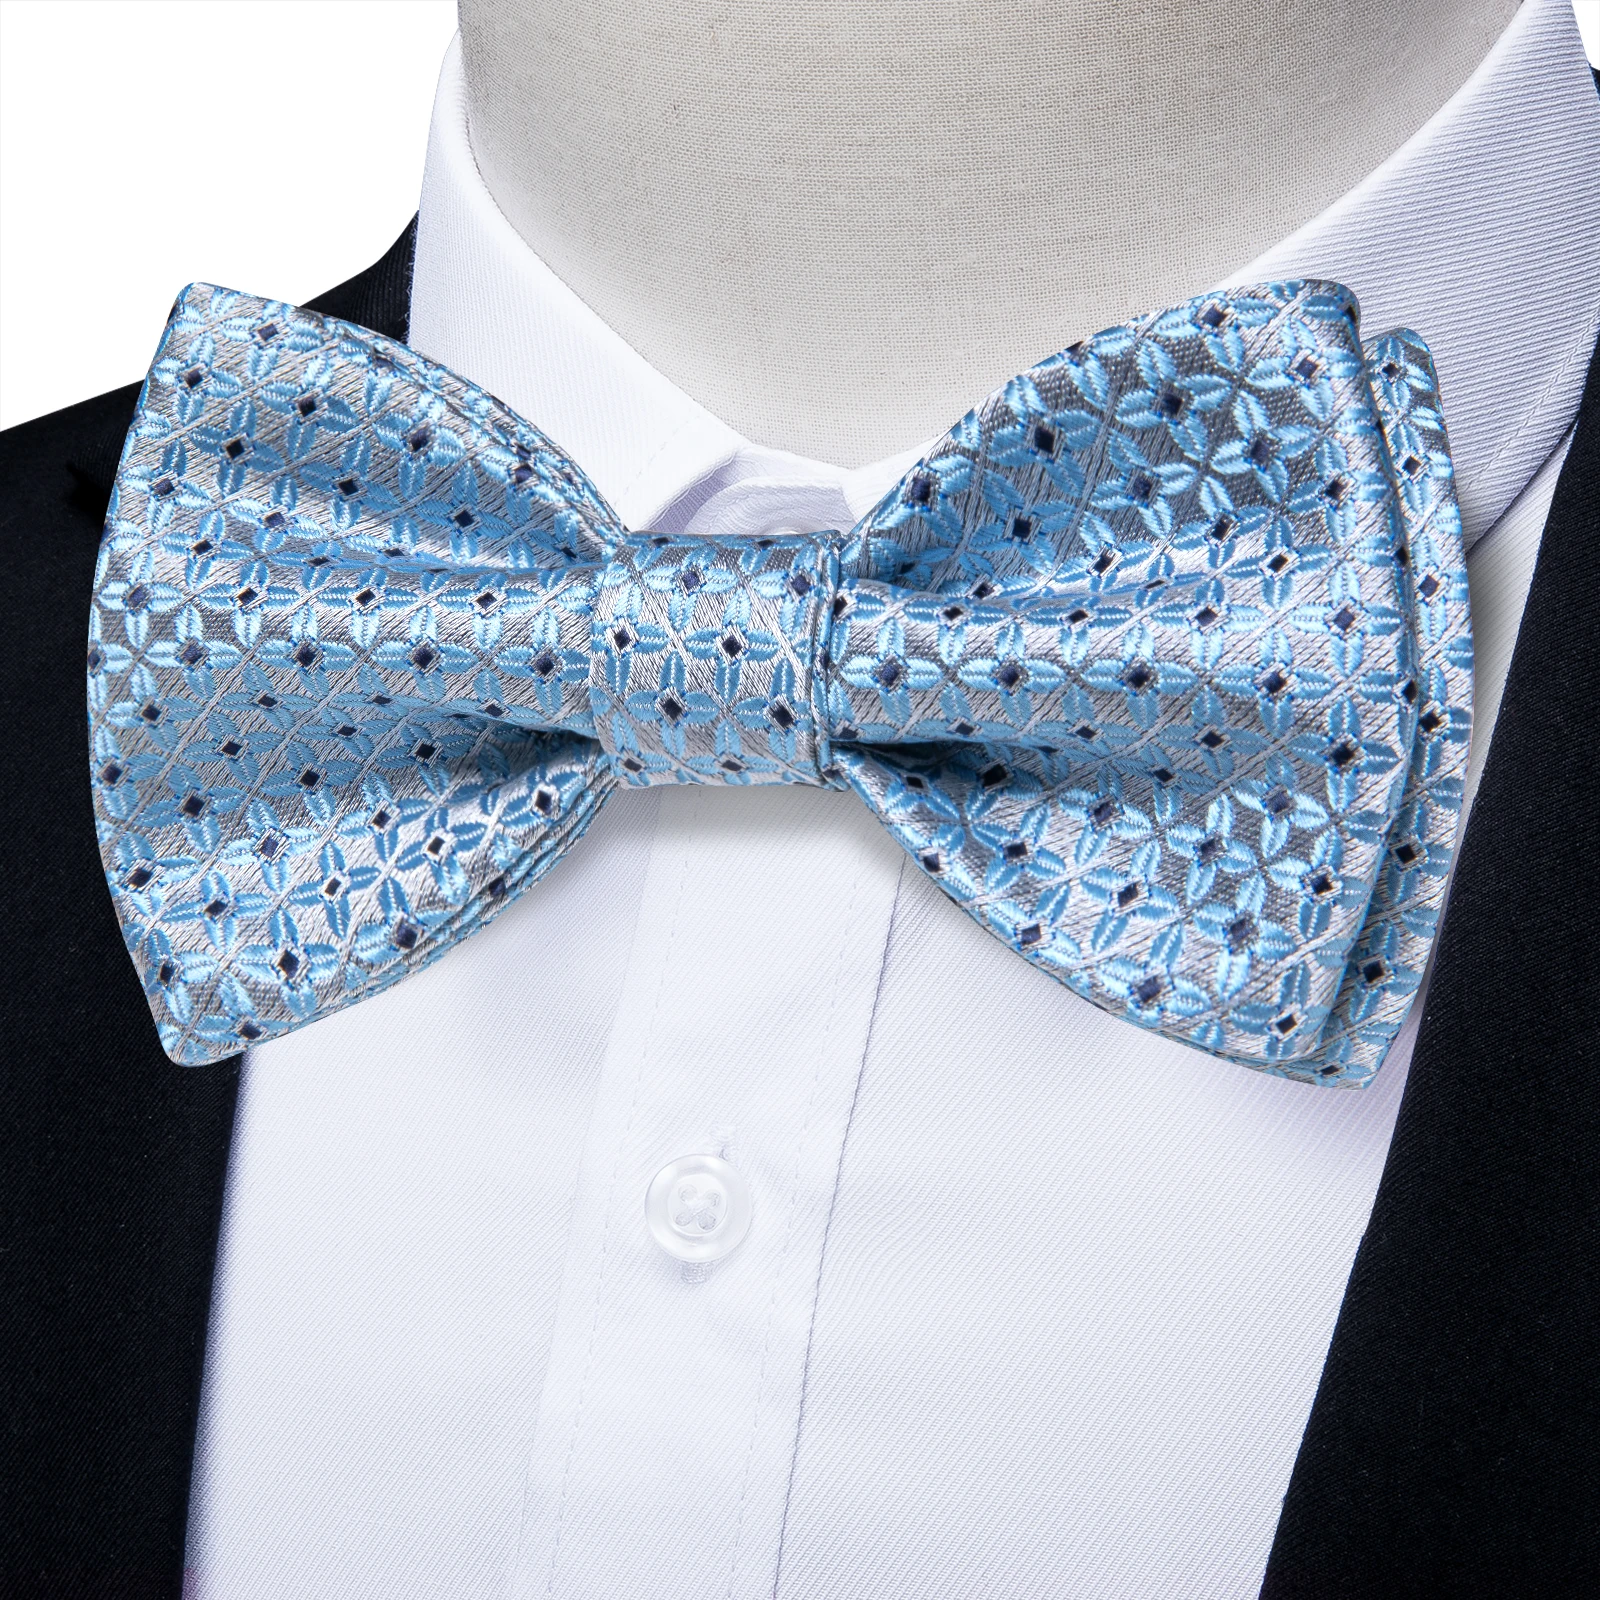 כחול עם נקודות של גברים עניבת פרפר עצמית לקשור עניבות פרפר לגברים אביזרים החתונה Slik יוקרה אלגנטית קשרים אדם חפתים כיס מרובע